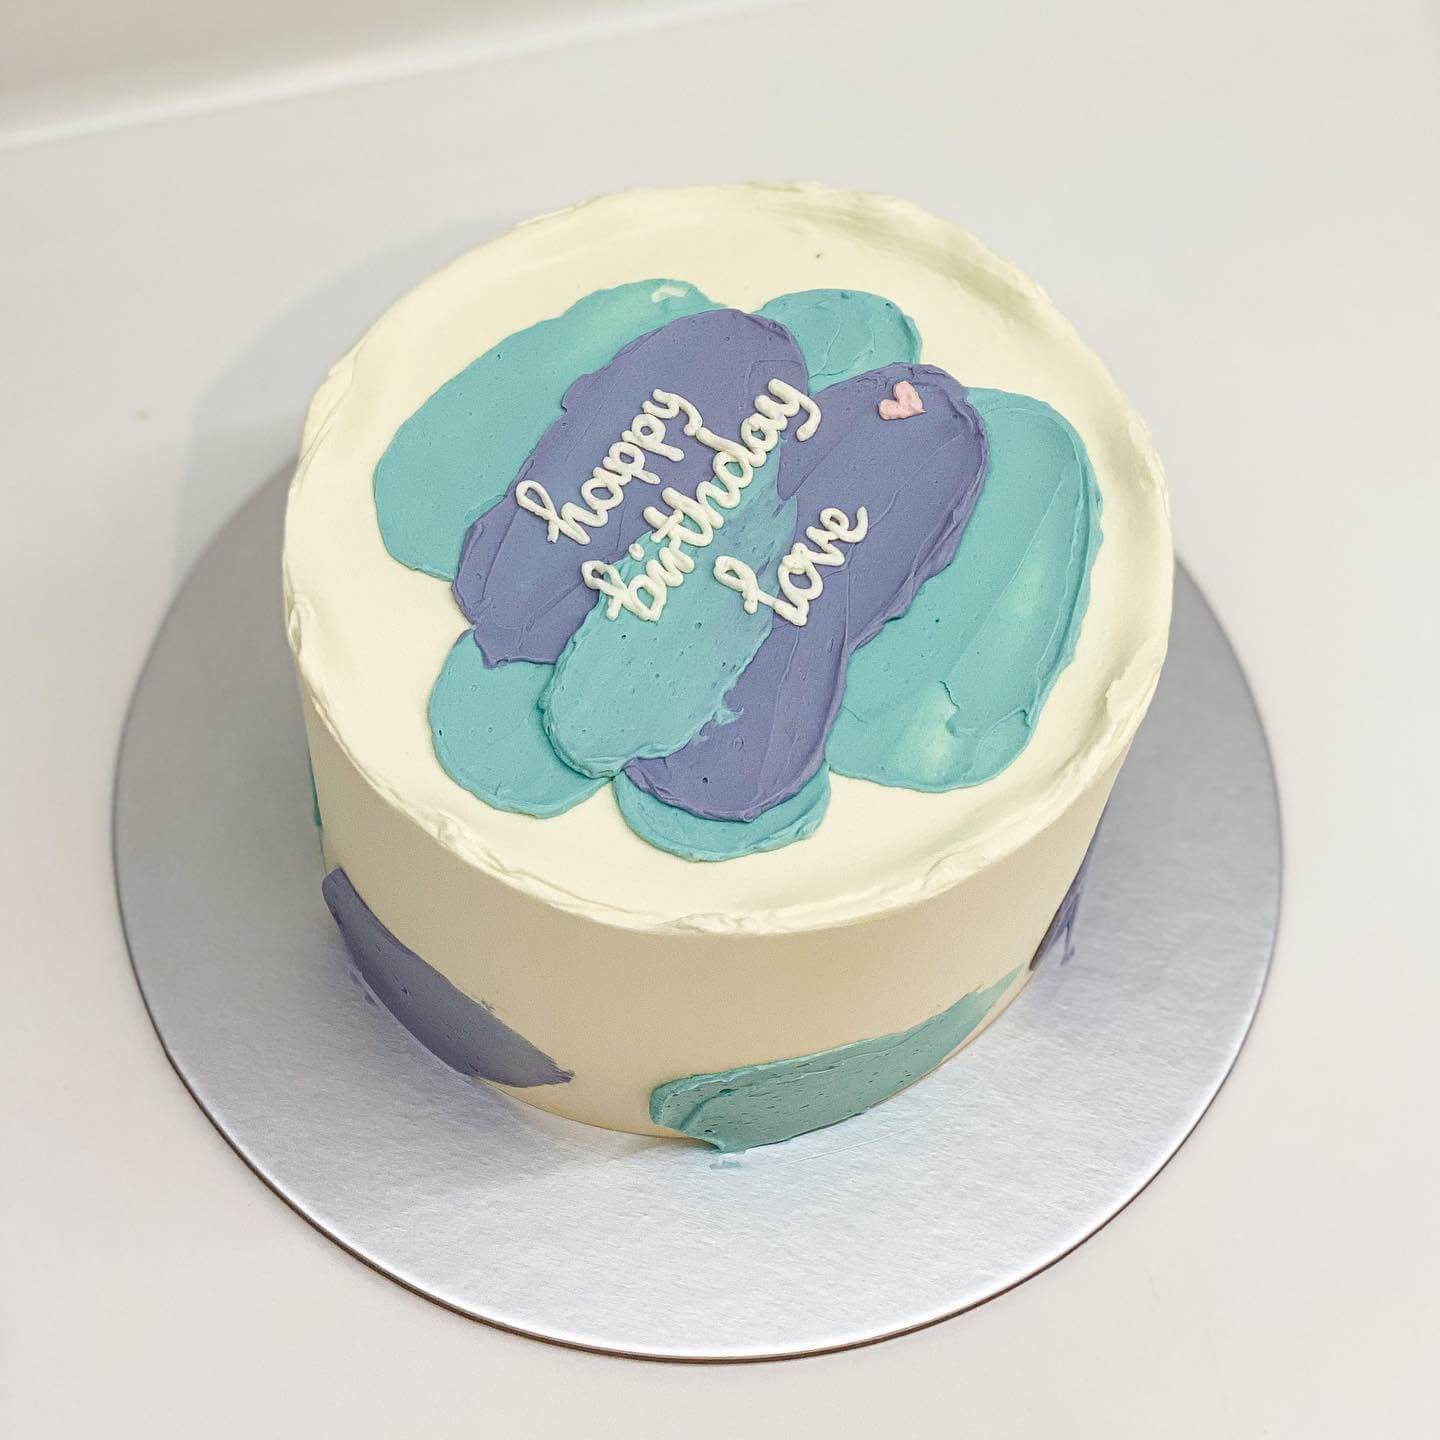 21,000+ Happy Birthday Cake Pictures